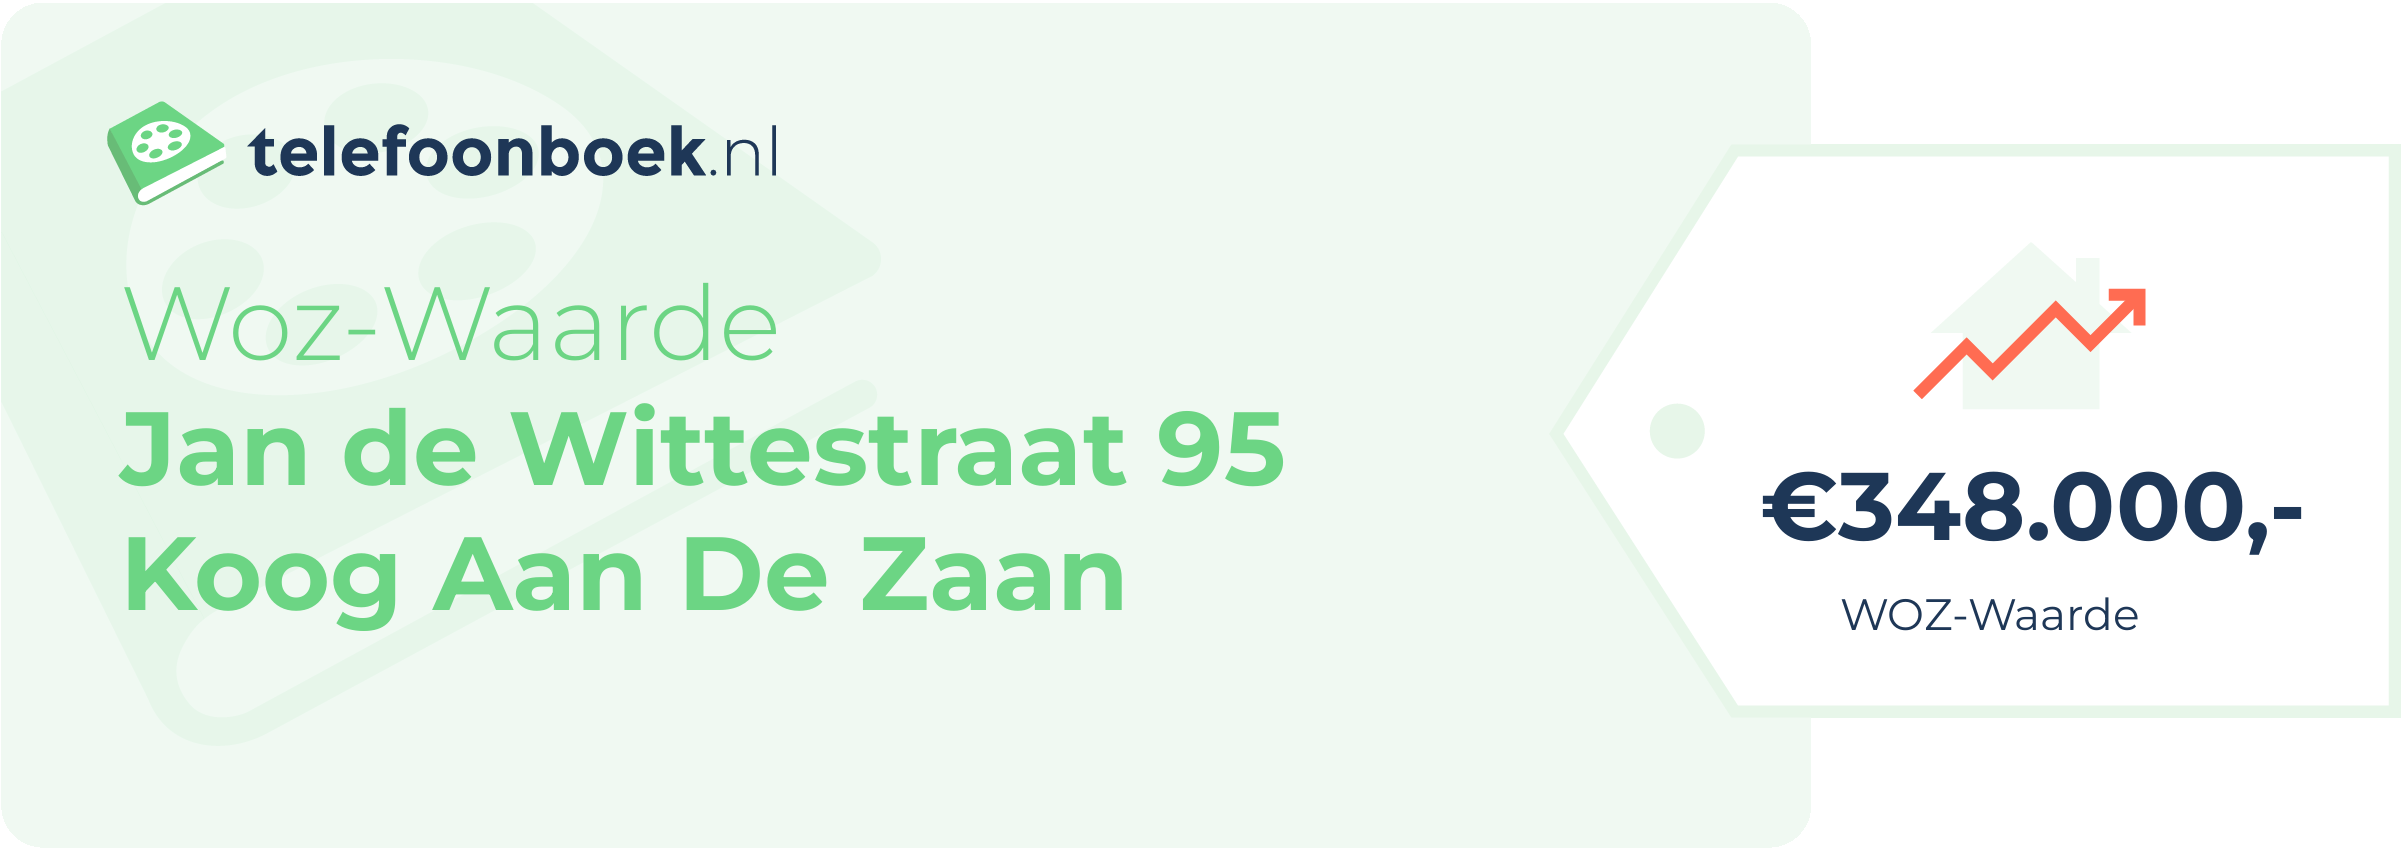 WOZ-waarde Jan De Wittestraat 95 Koog Aan De Zaan